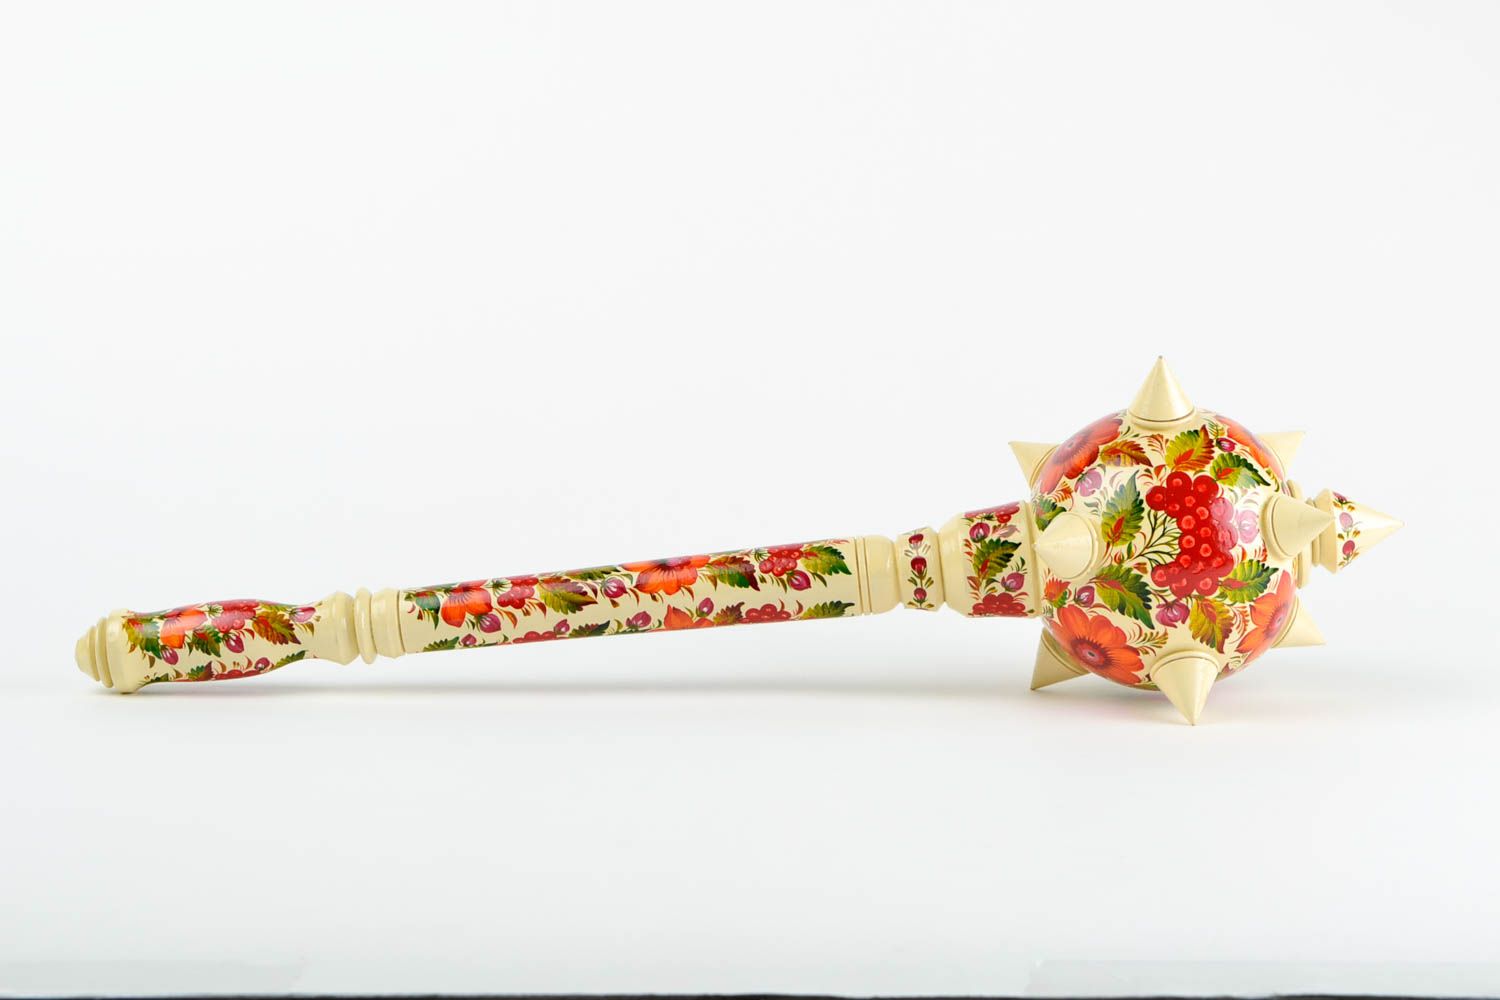 Handmade designer decorative mace stylish ethnic weapon for decorative use only photo 2